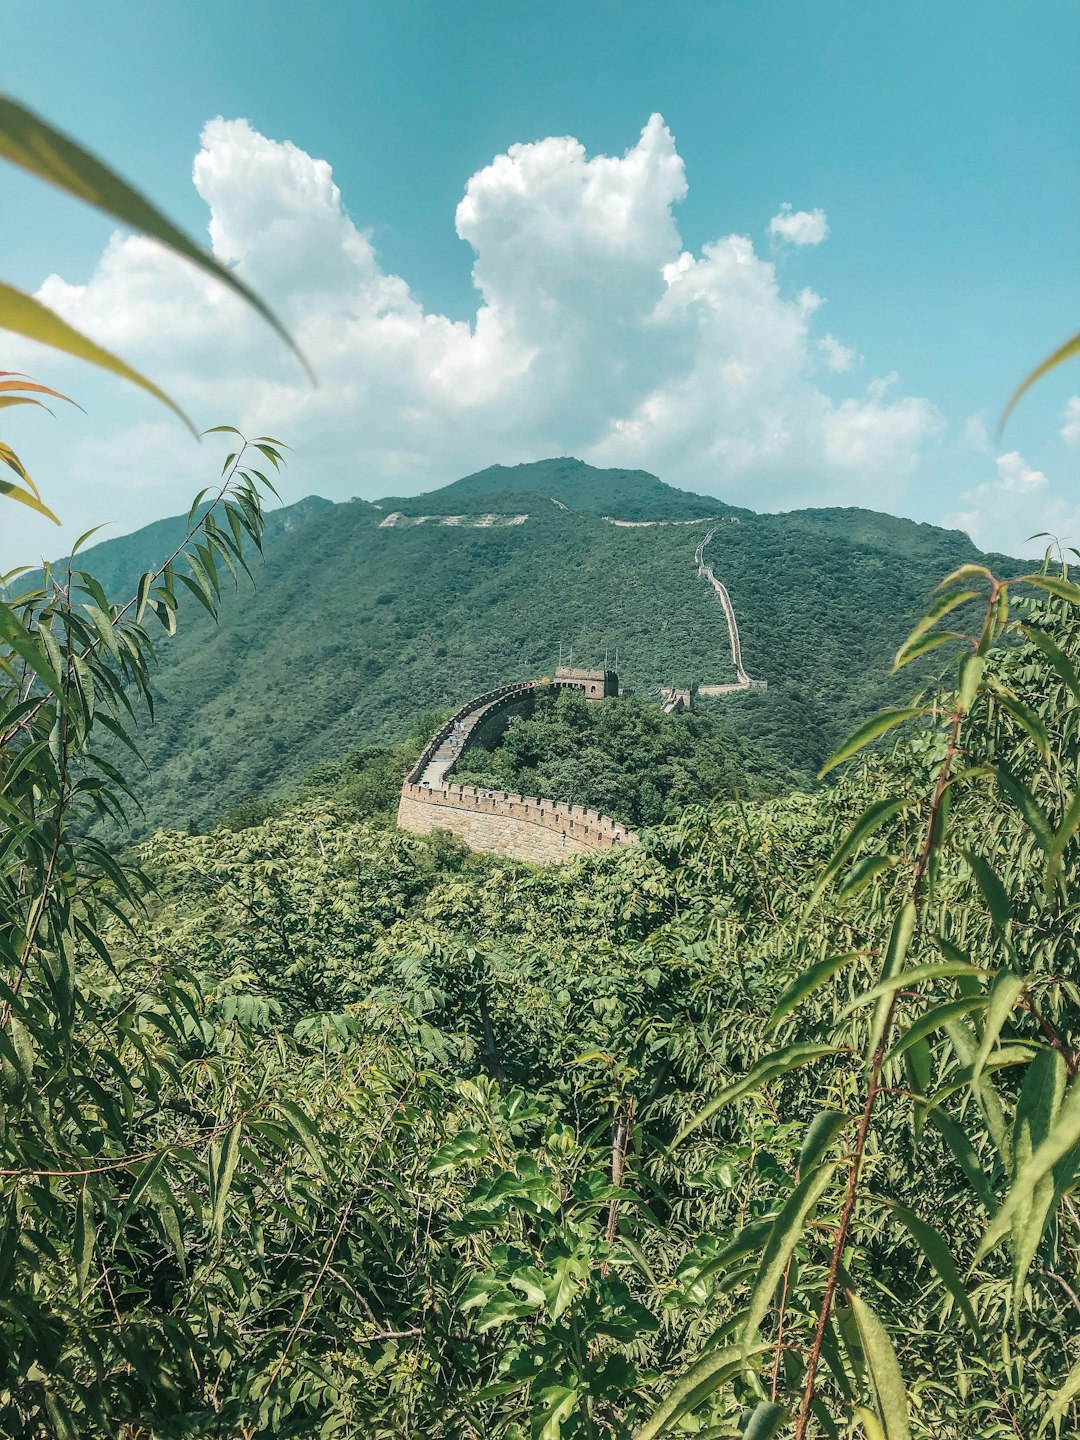 Jungle photo spot Great Wall of China China